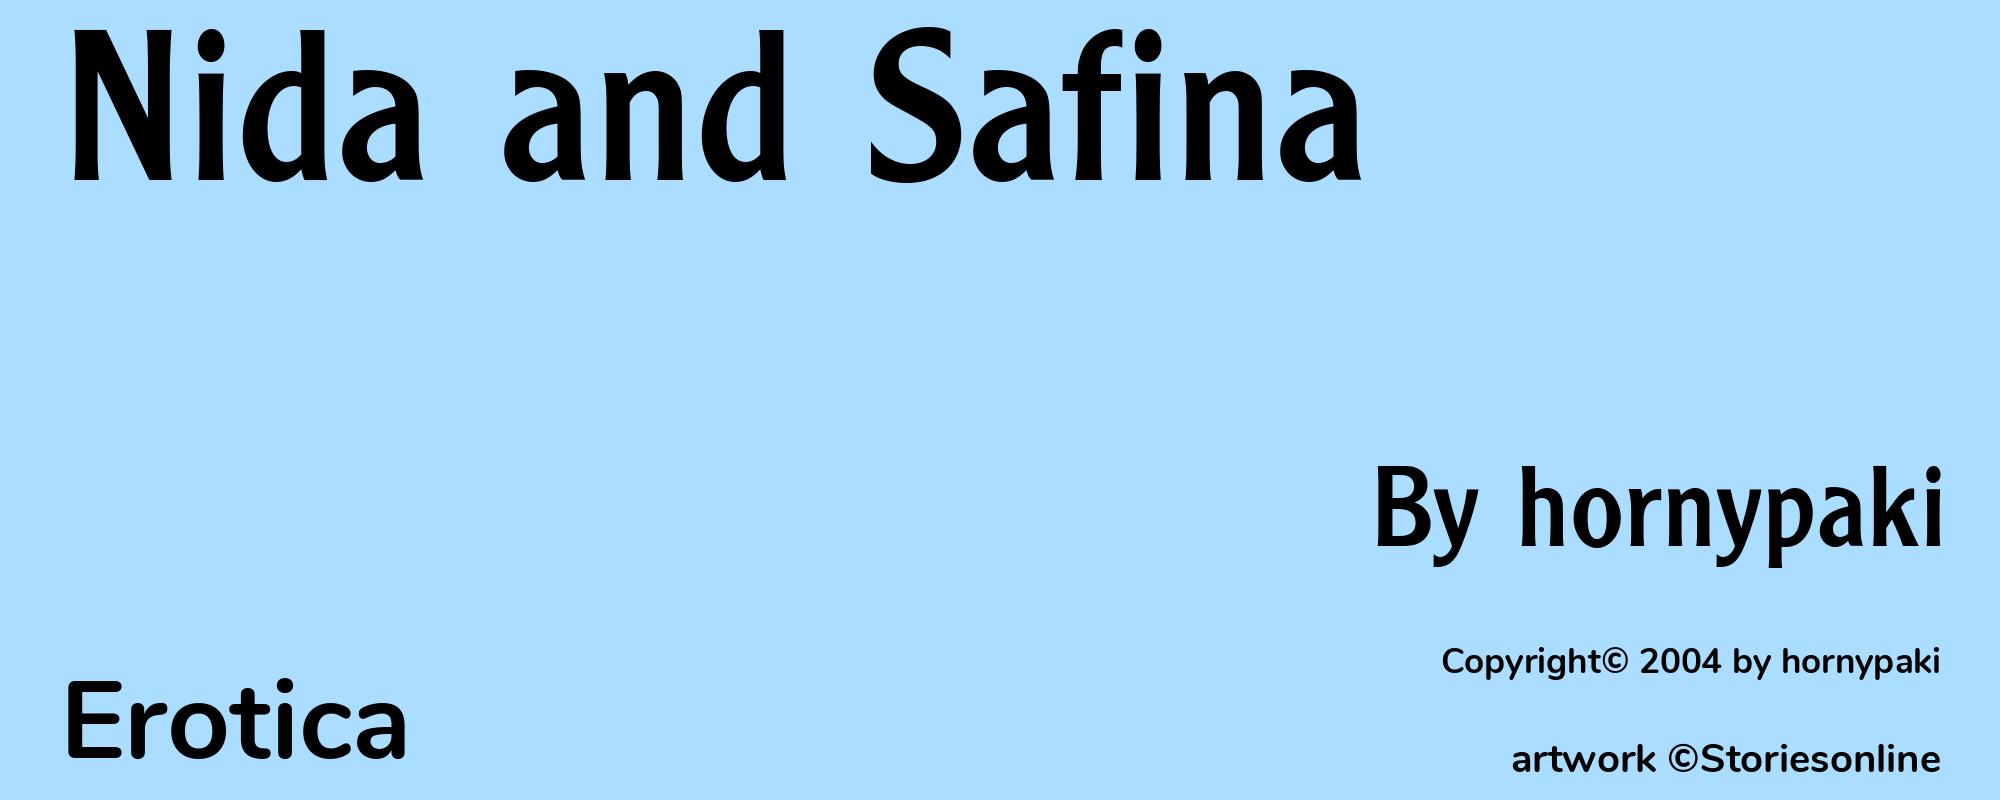 Nida and Safina - Cover